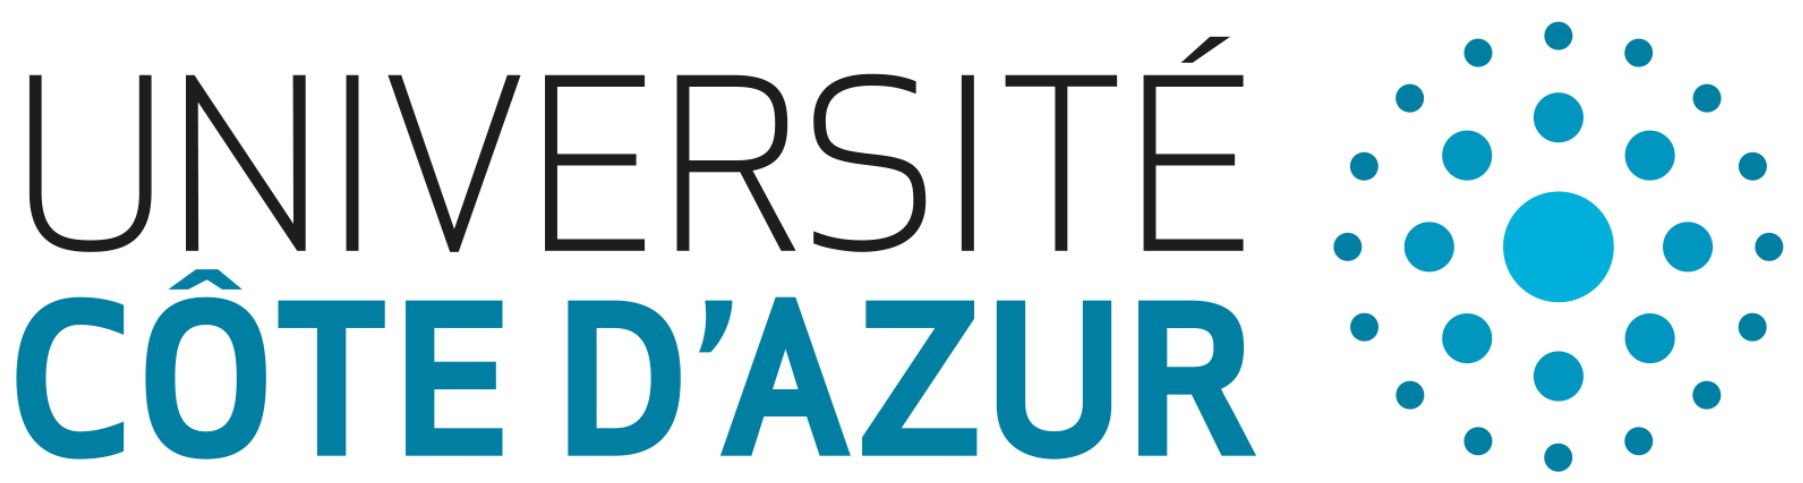 Logo de l'Université Côte d'Azur